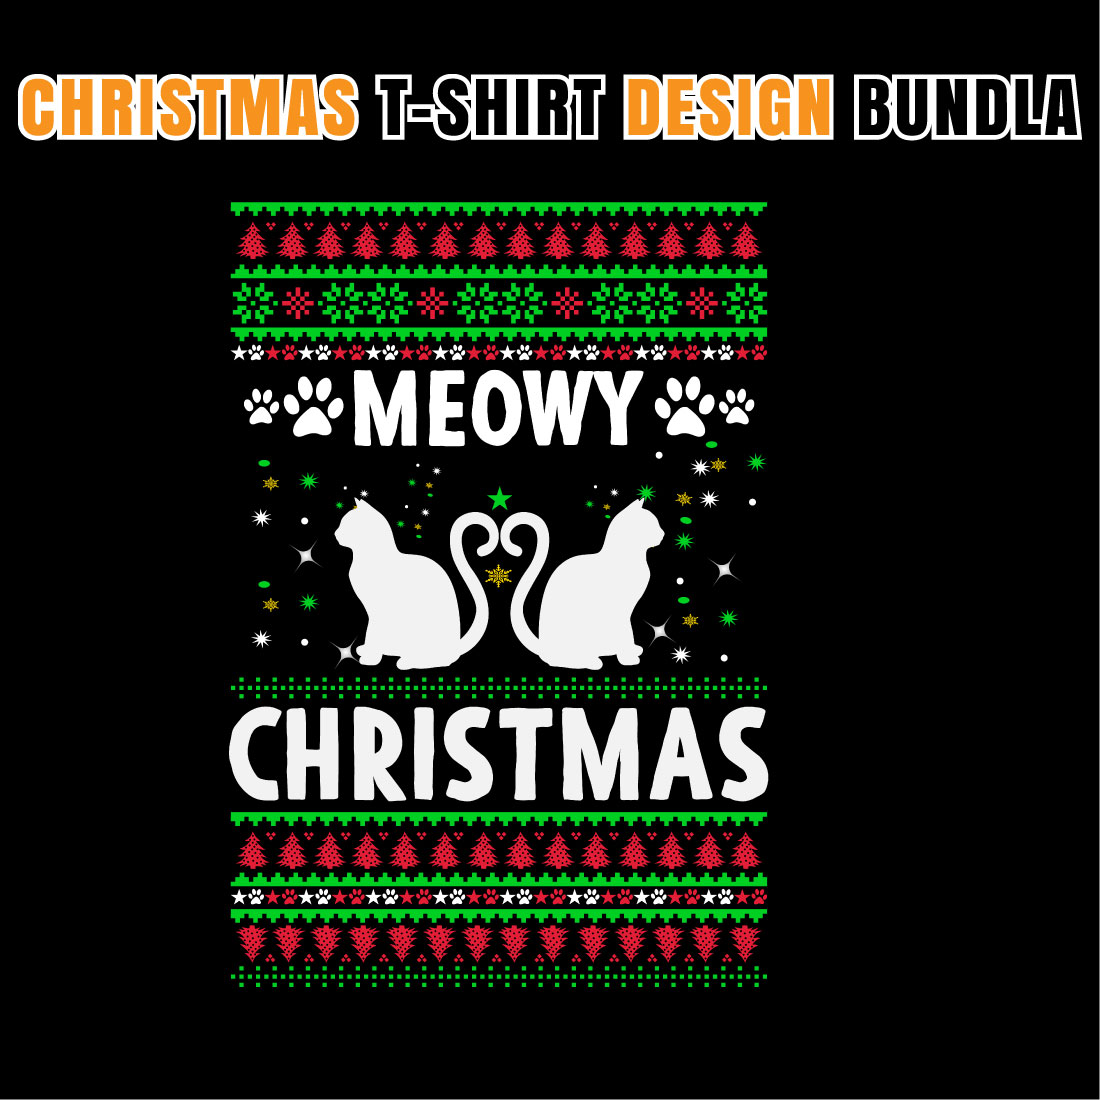 Christmas T-shirt Designs Bundle V.1 facebook image.